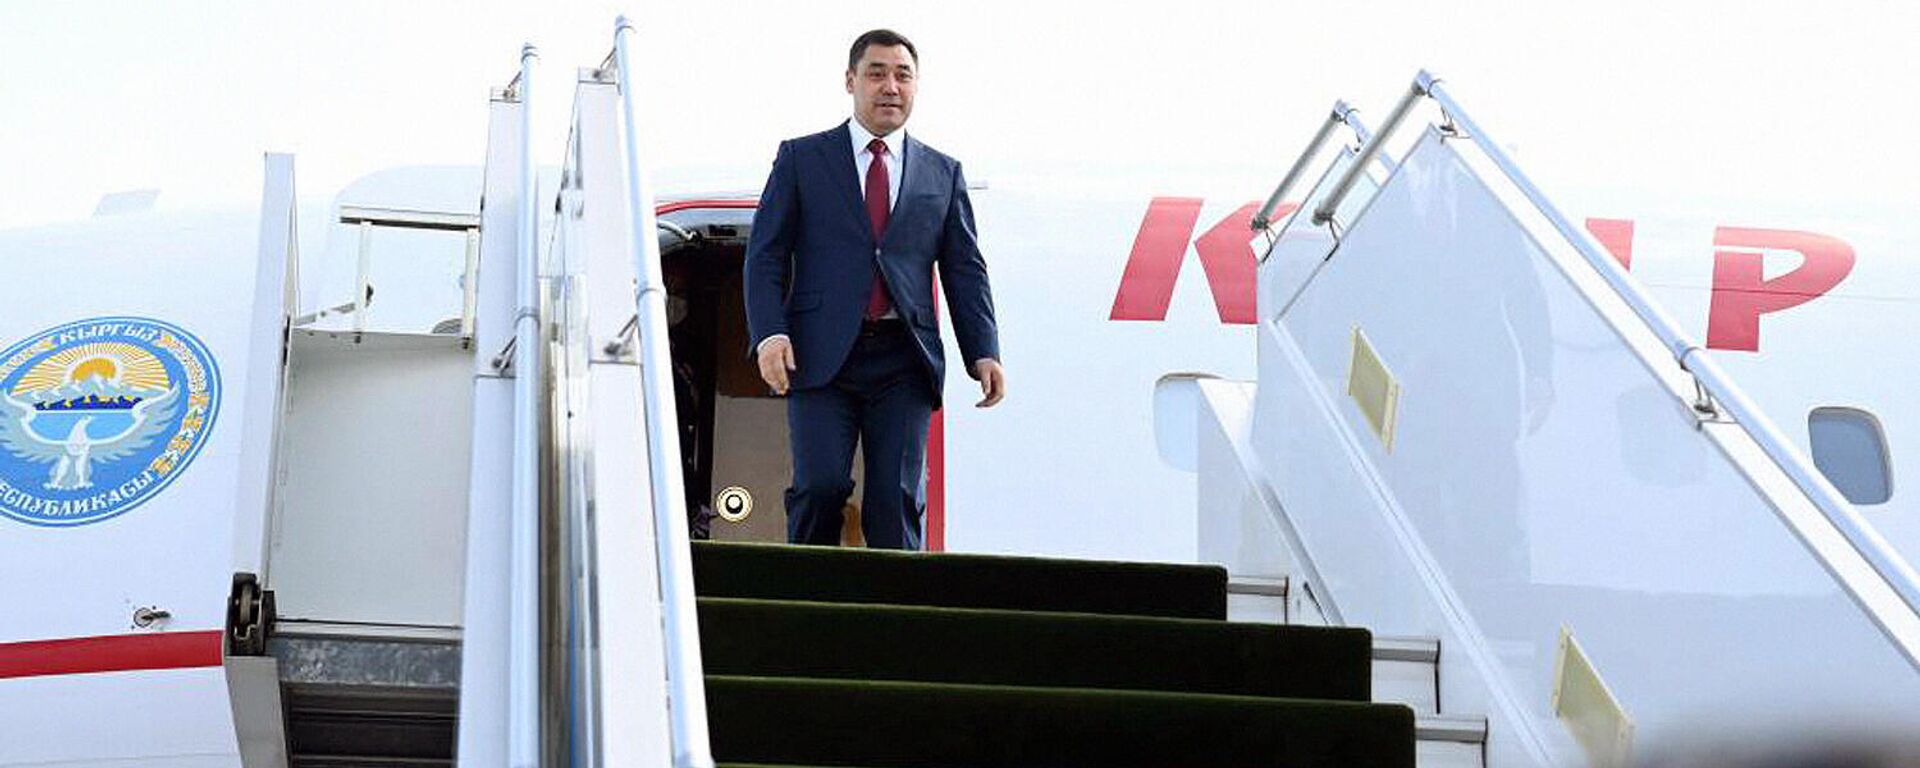 Президент Кыргызстана Садыр Жапаров прибыл в Ташкент с государственным визитом - Sputnik Ўзбекистон, 1920, 11.03.2021